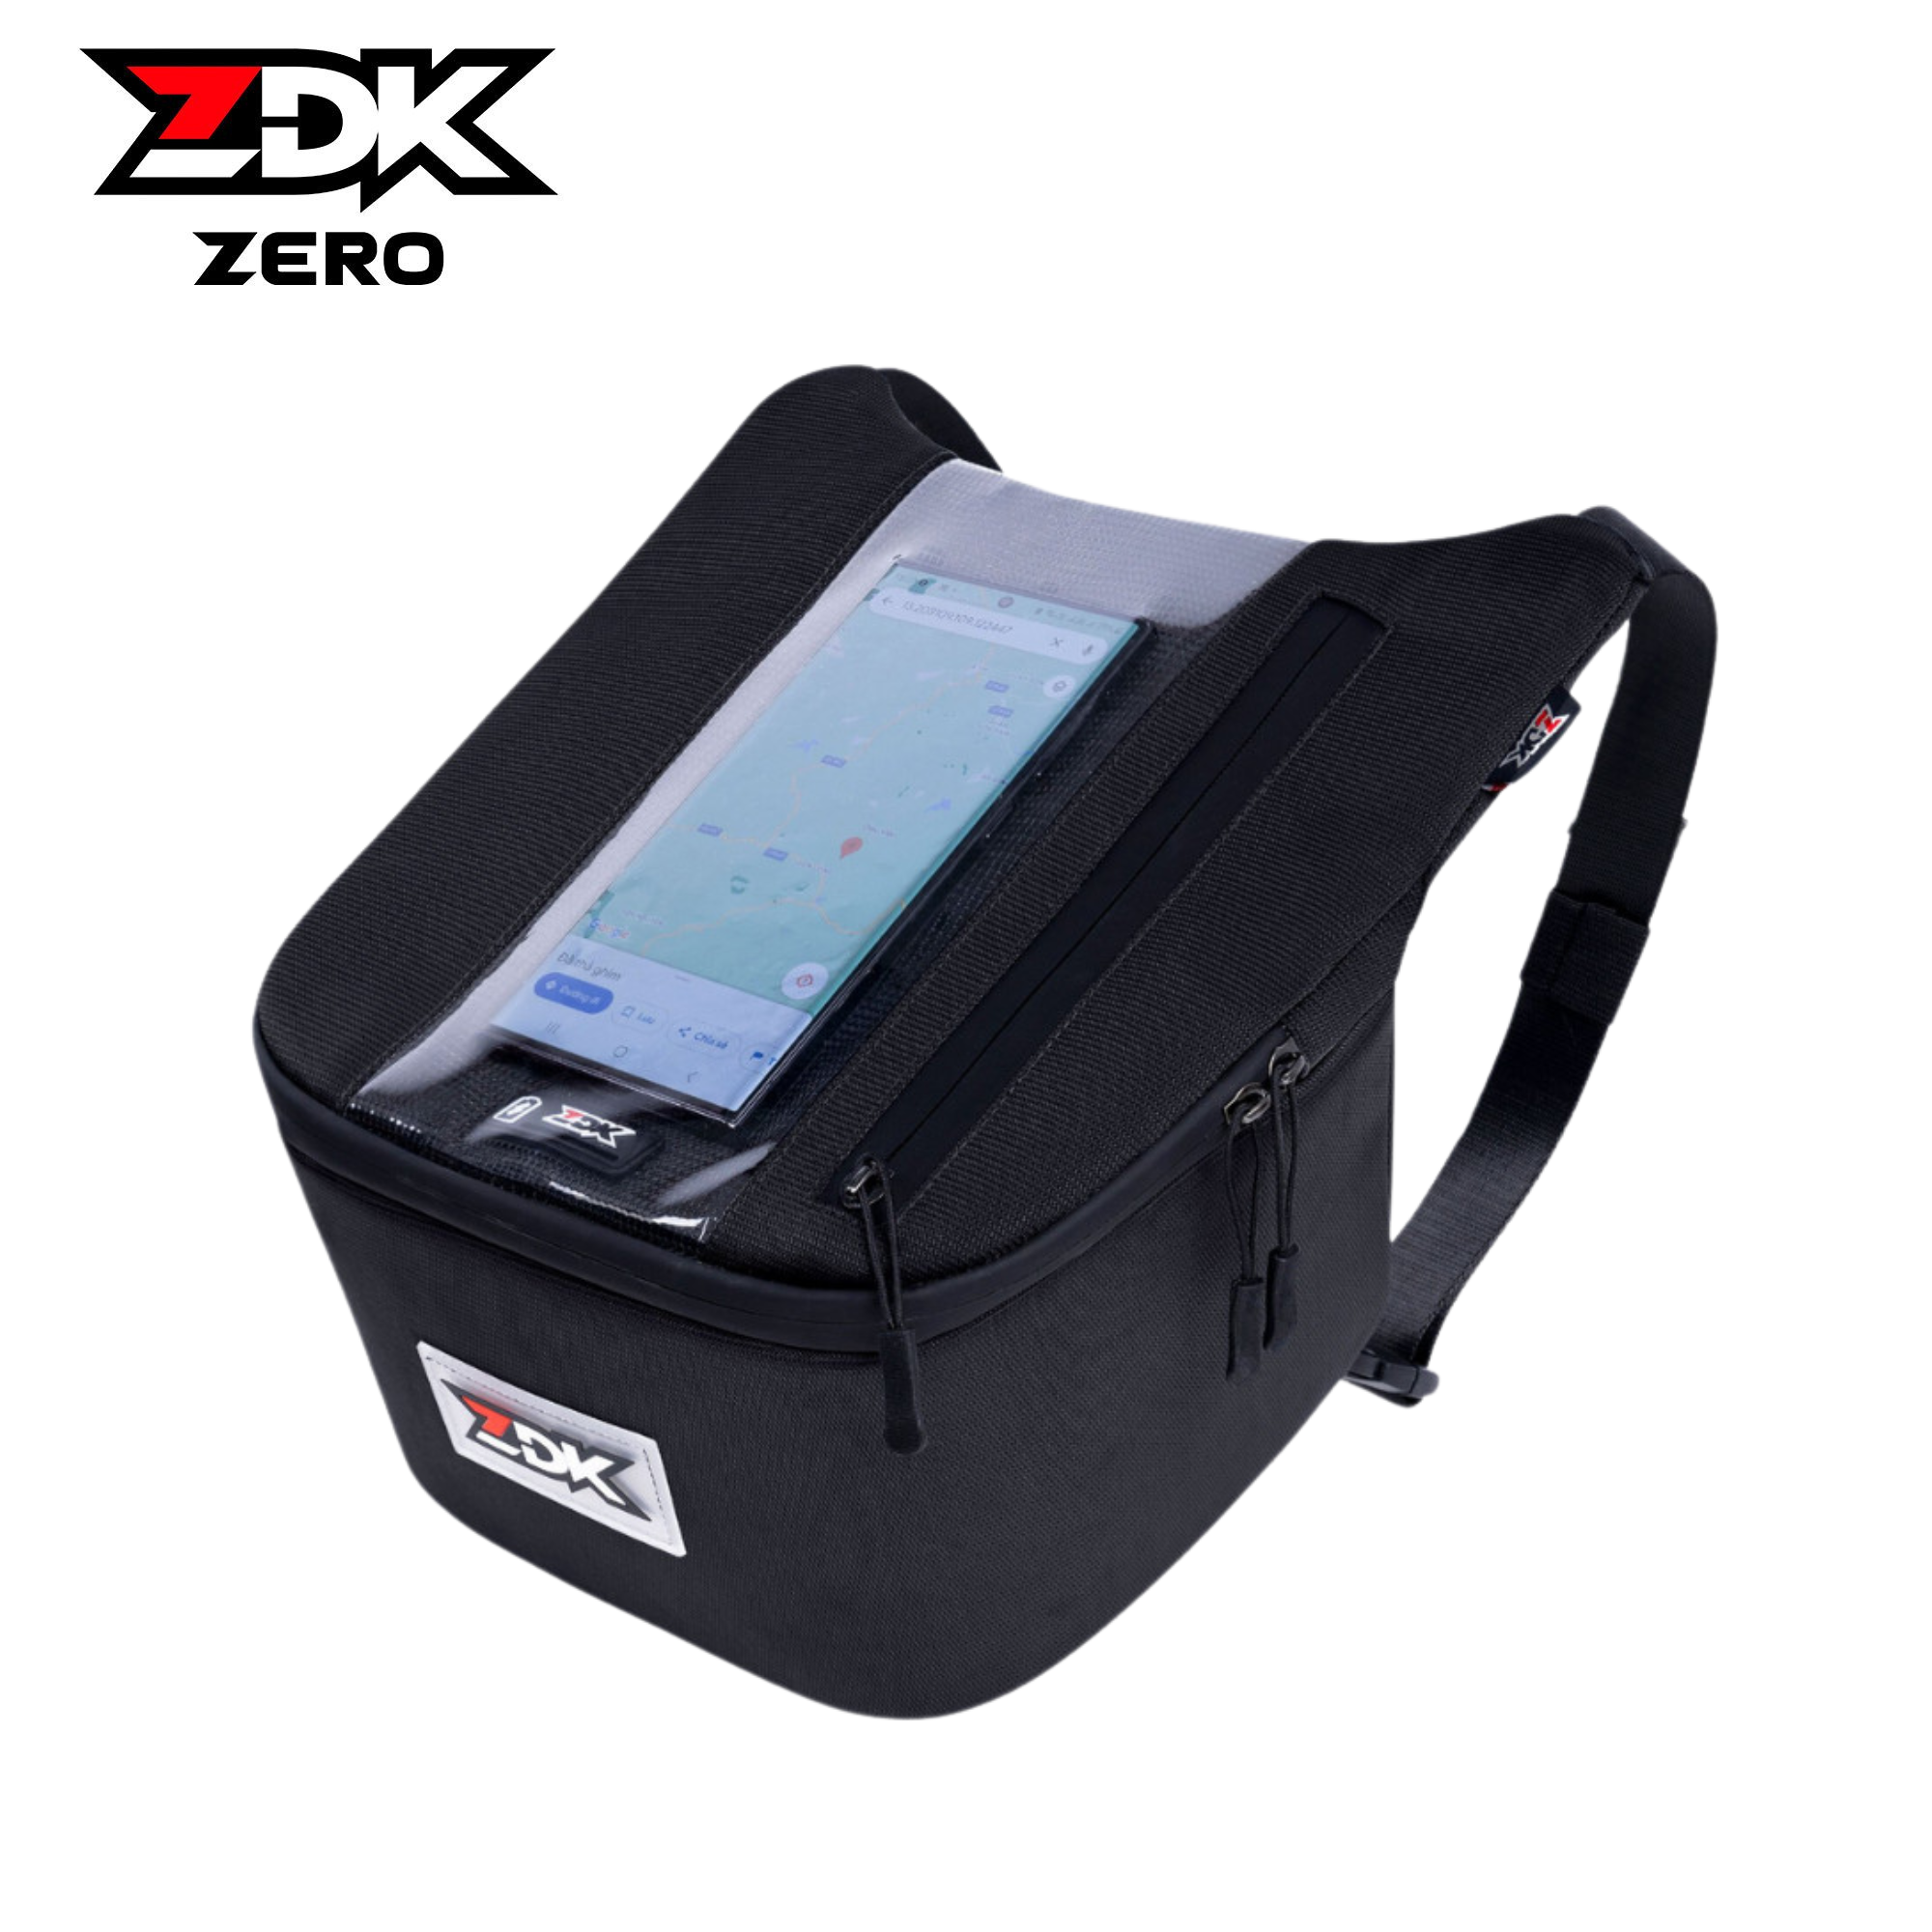 ZDK ZERO - Túi treo đầu xe ZDK Zero đựng điện thoại treo xe cảm ứng siêu mượt xem điện thoại tiện lợi khi chạy grab đi phượt đựng áo mưa sạc dự phòng ví tiền